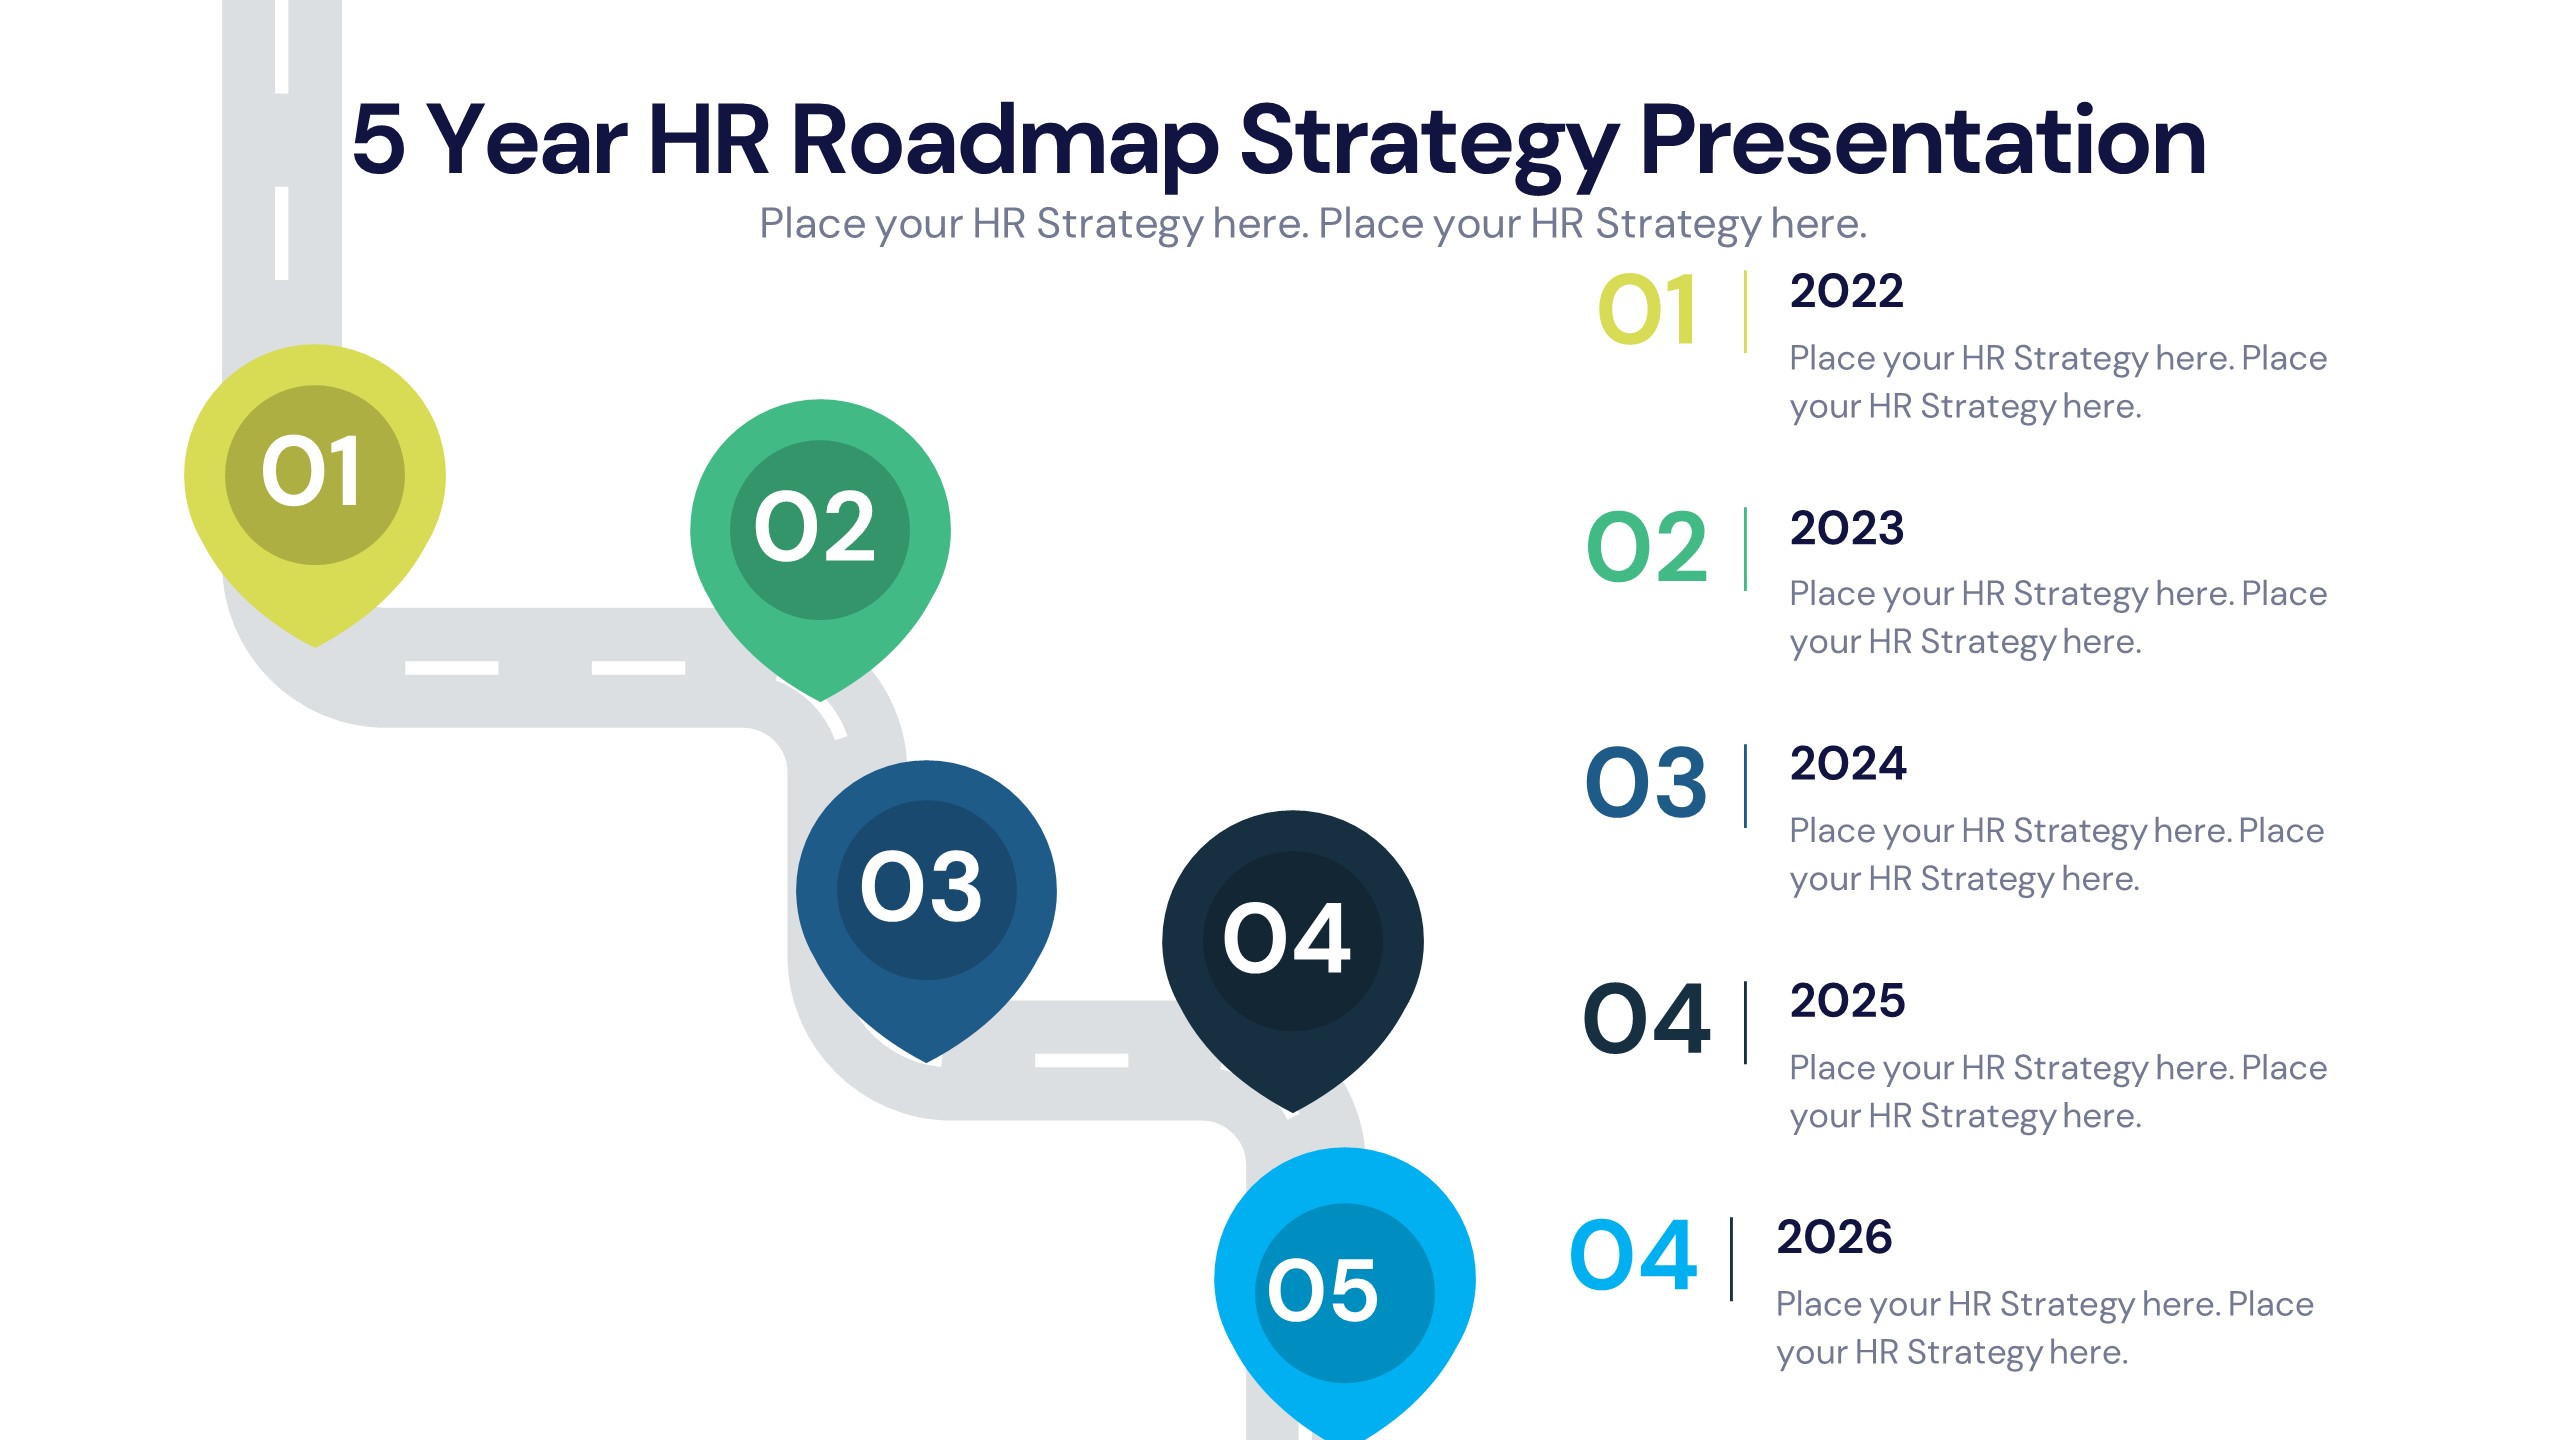 5 Year HR Roadmap Strategy Presentation